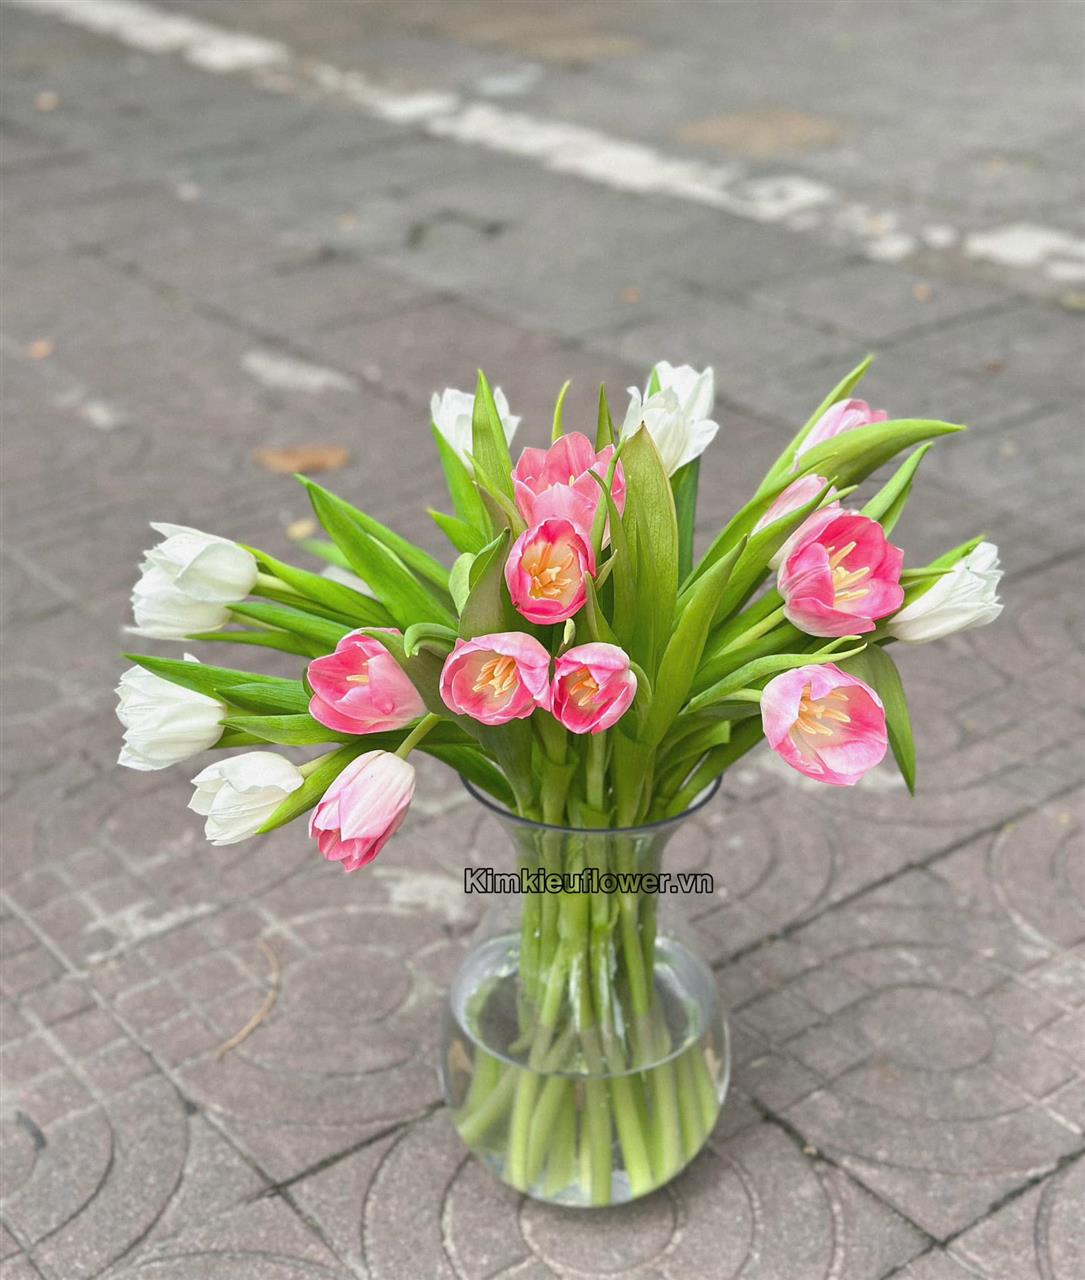 Hoa tulip với ngoại hình nhỏ nhắn, nhẹ nhàng